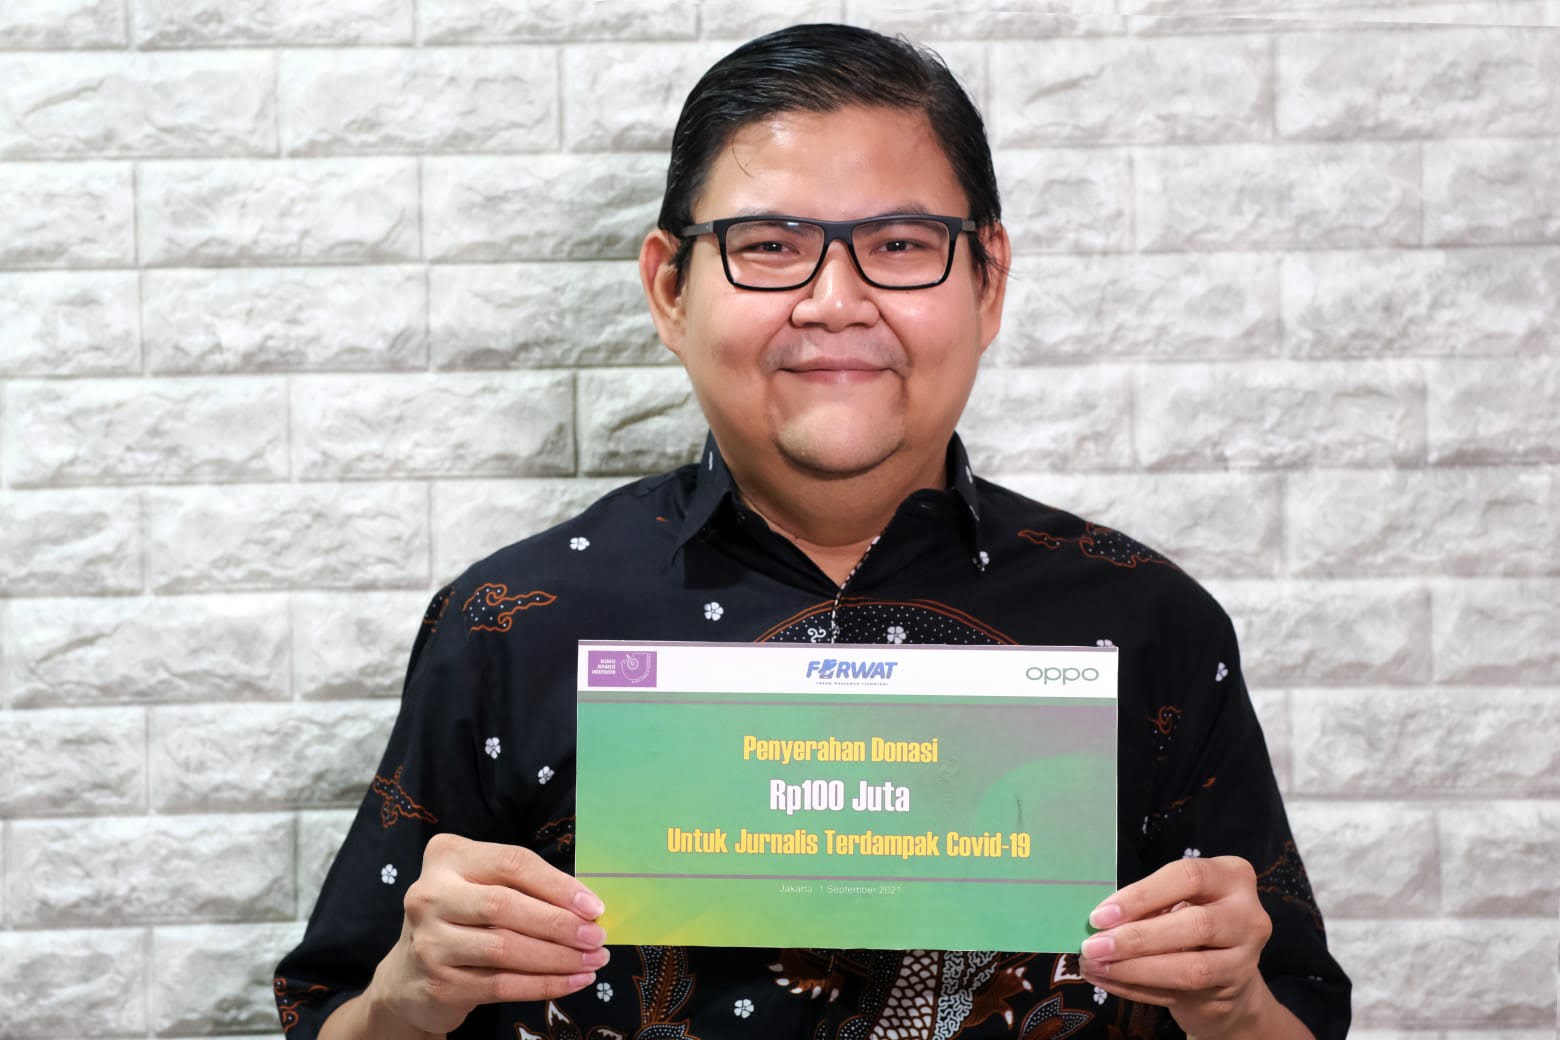 OPPO Gandeng FORWAT dan AJI Salurkan 100 Juta Rupiah Buat Jurnalis Terdampak Covid-19